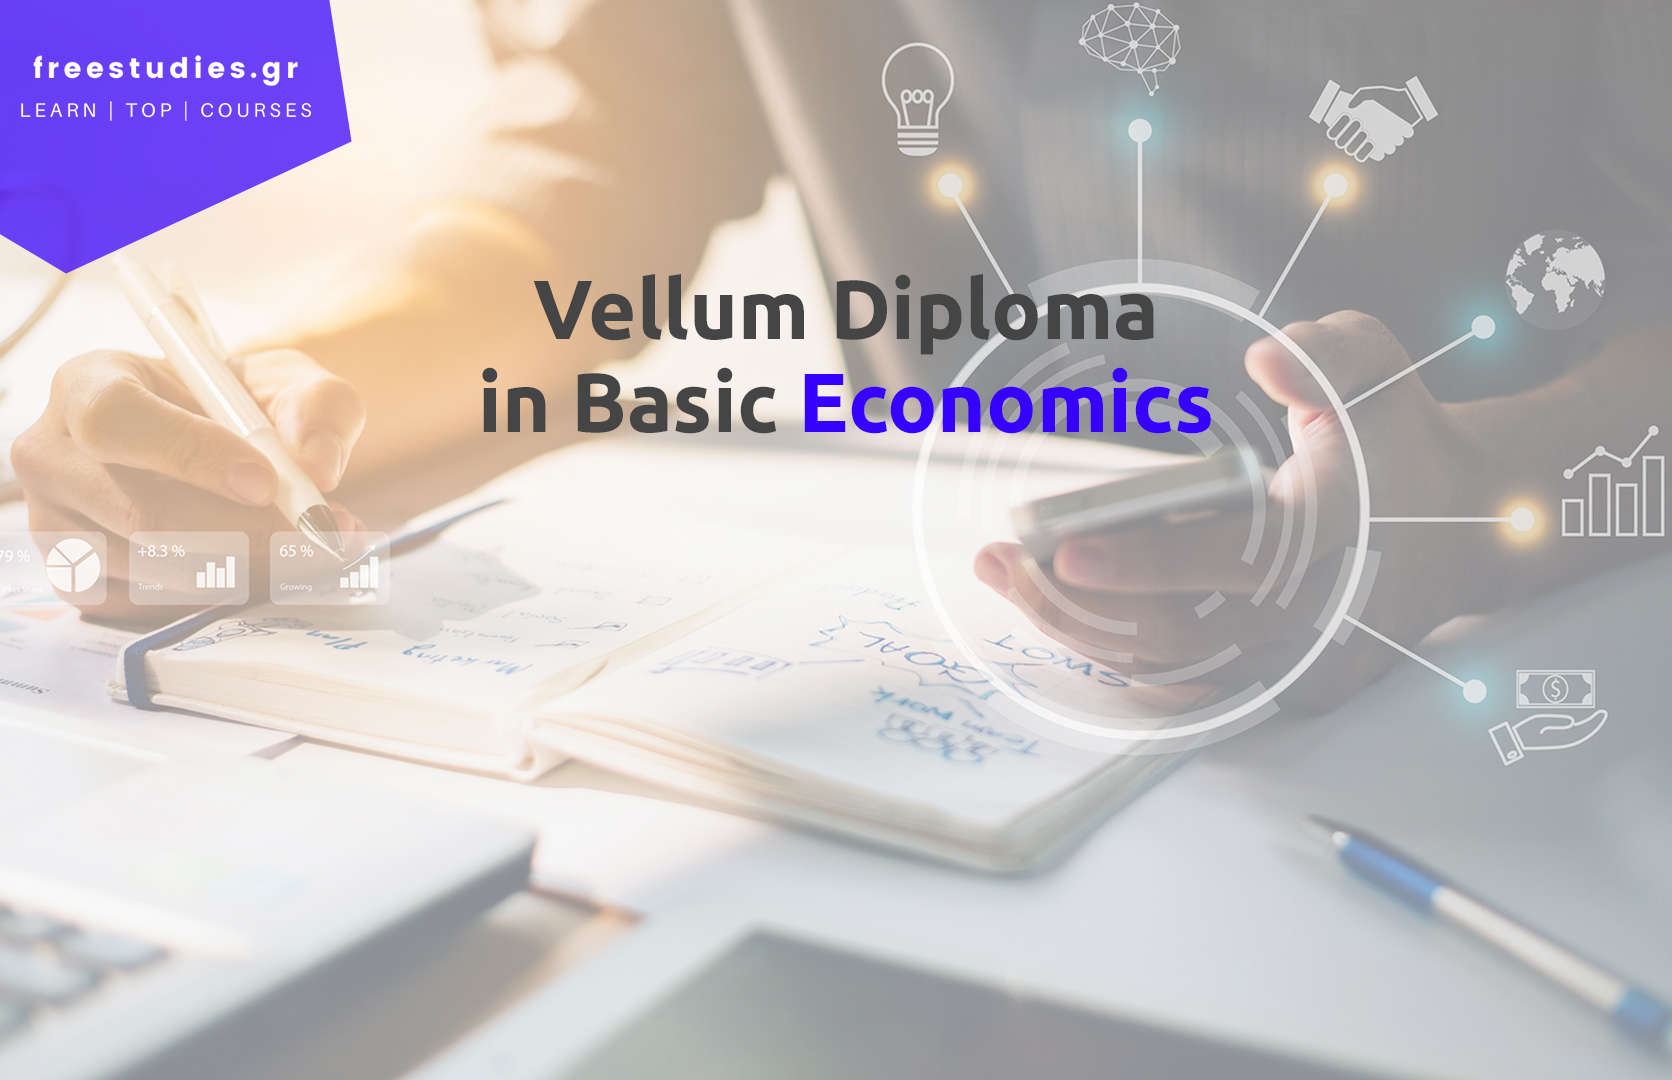 Vellum Diploma in Basic Economics